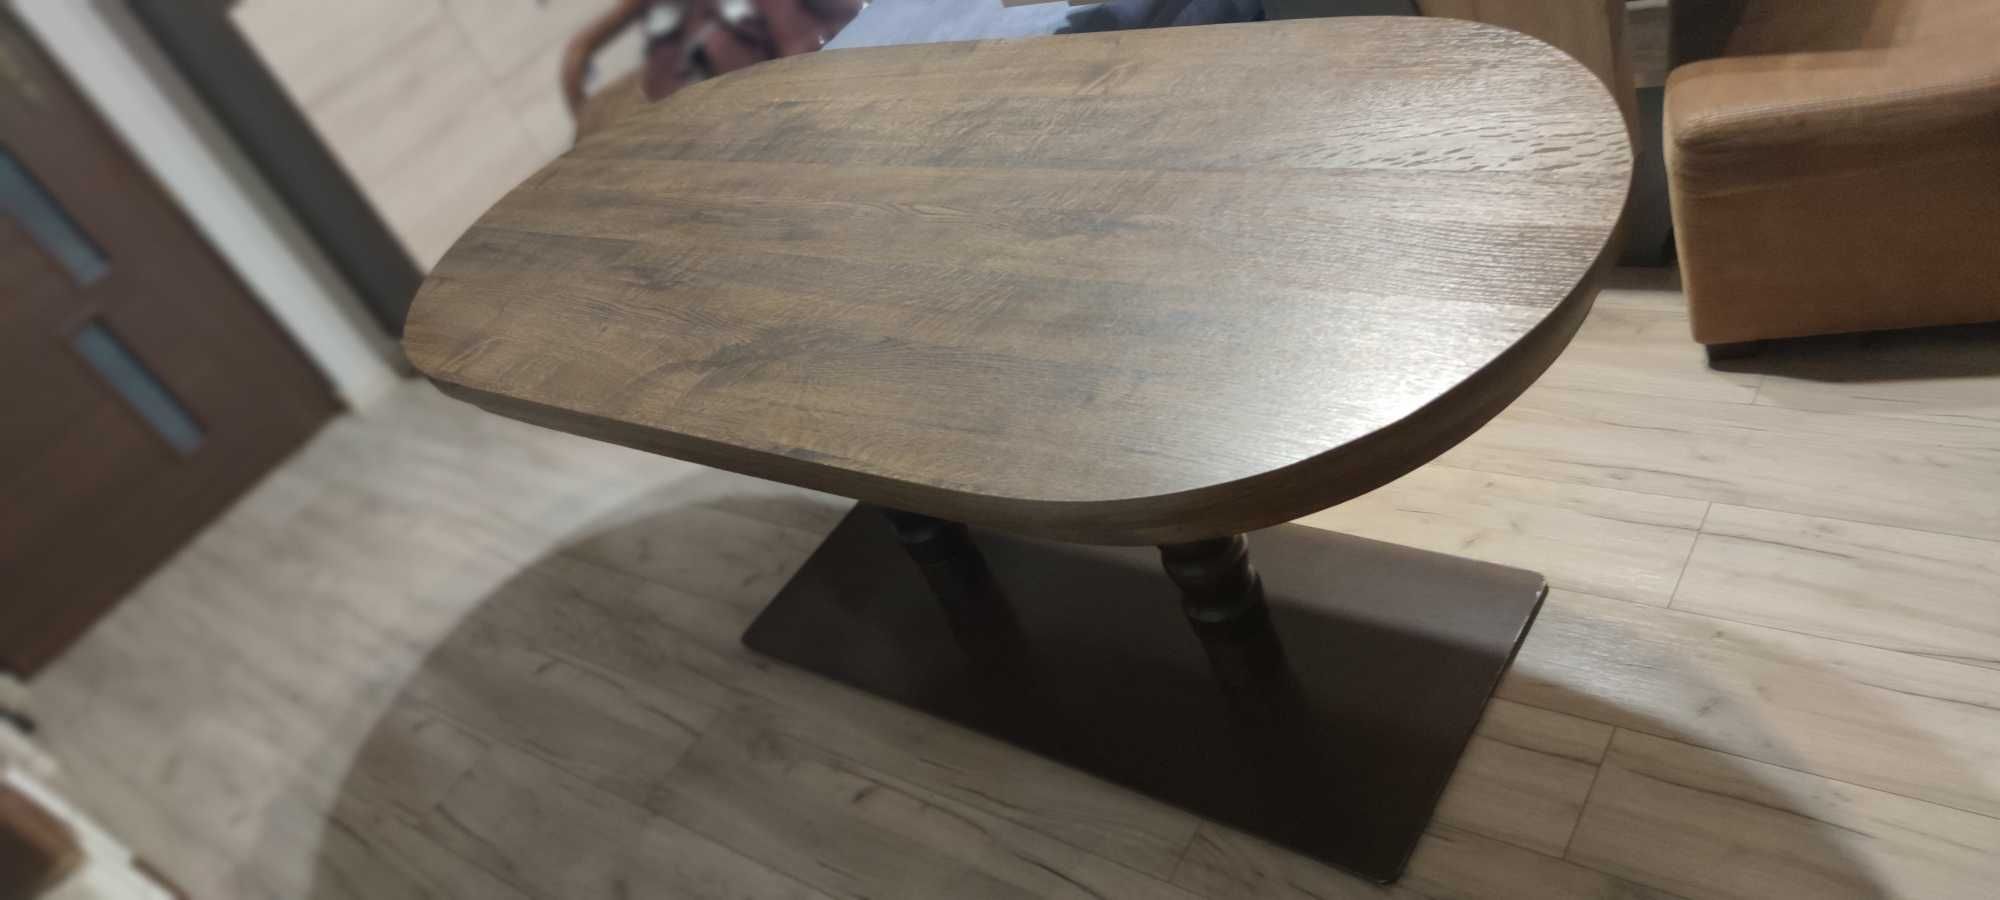 Duży klasyczny stół. Stabilny, konkretny i oryginalny stół z podstawą.